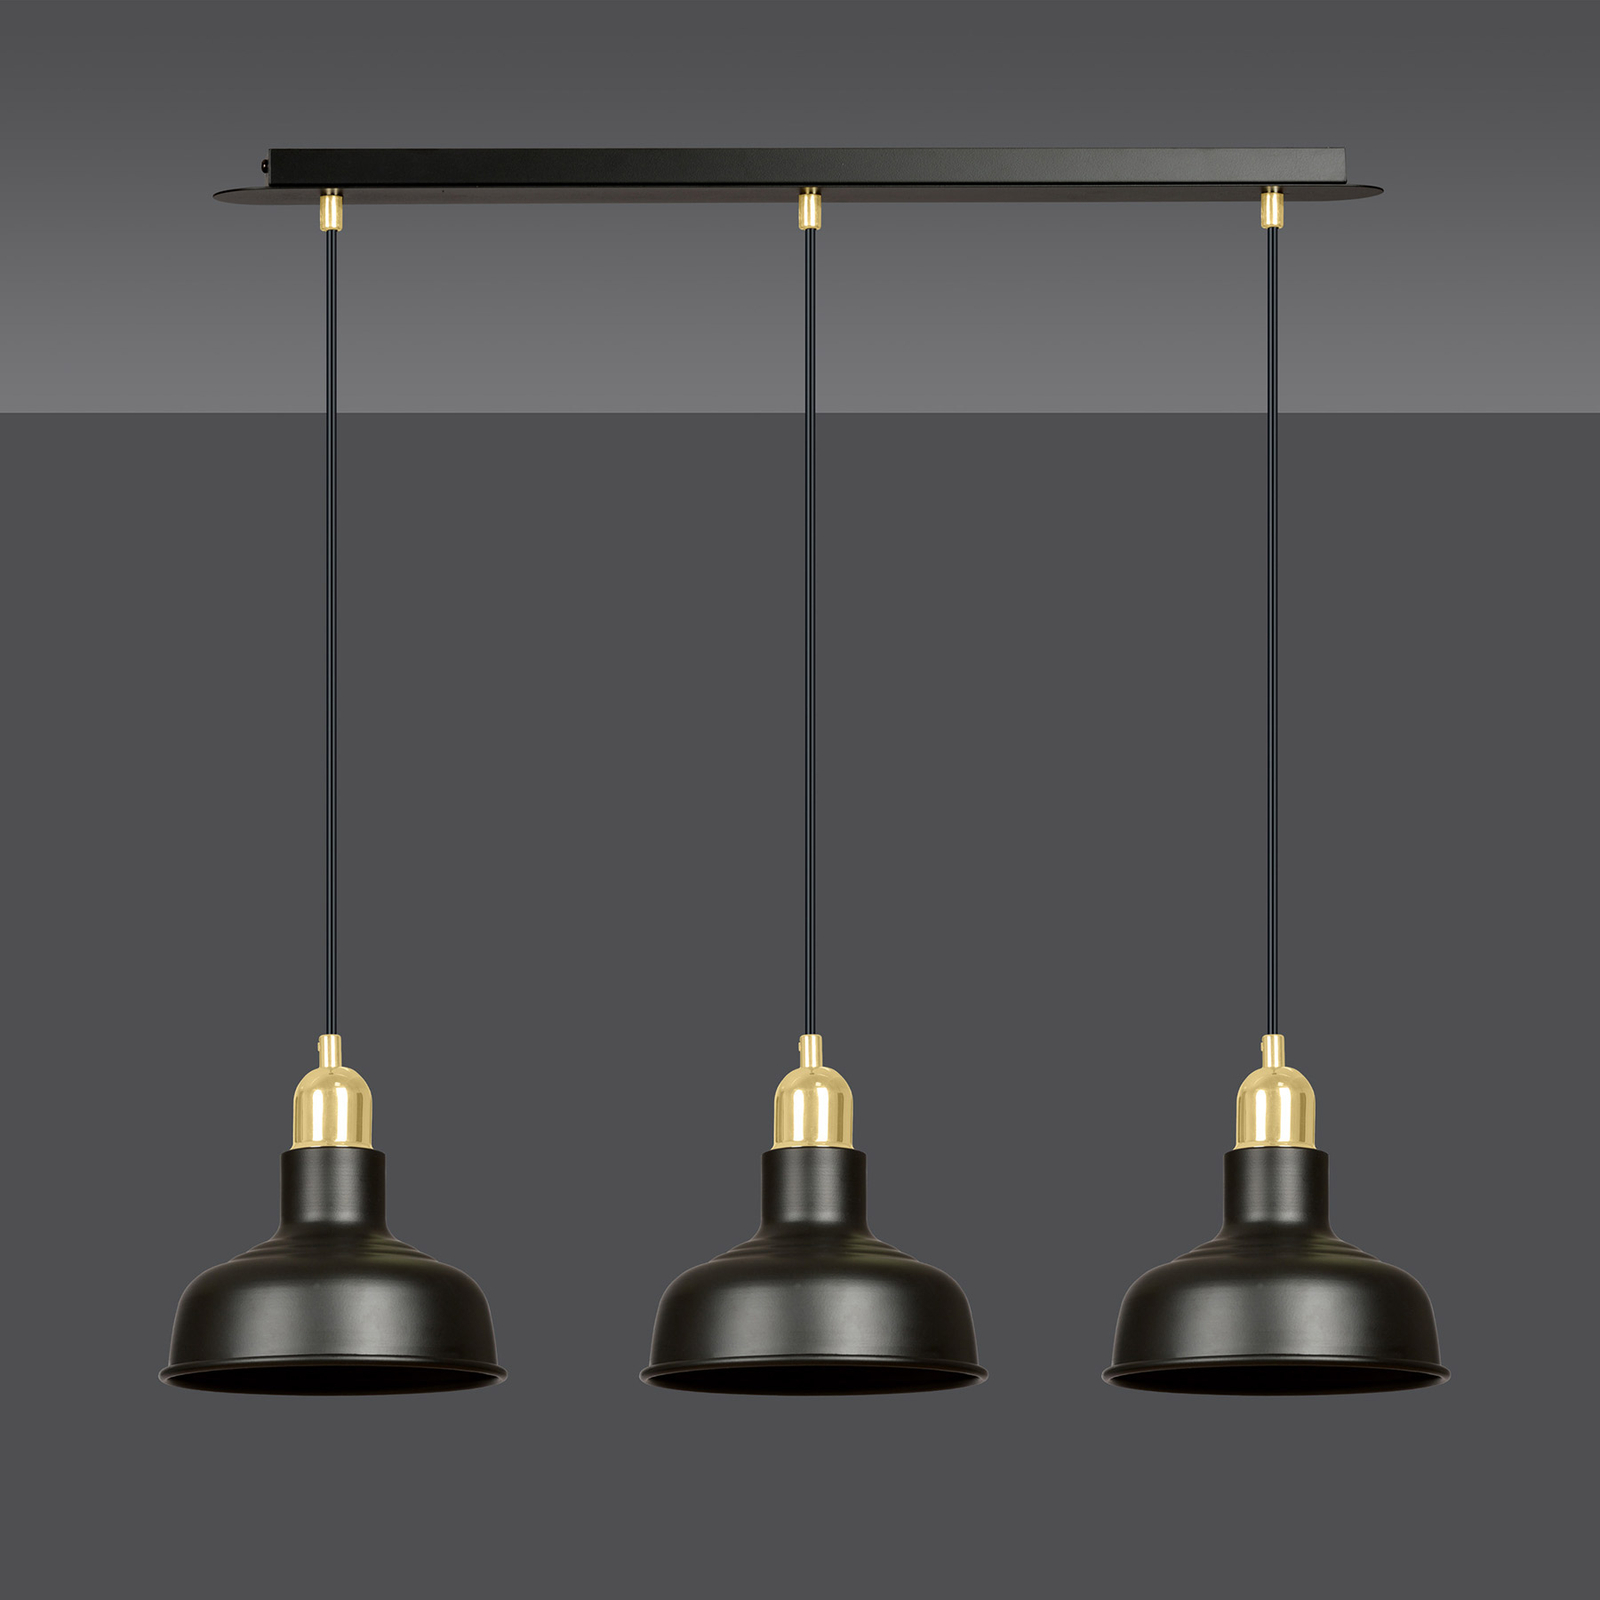 Gubo pendant light, 3-bulb, black